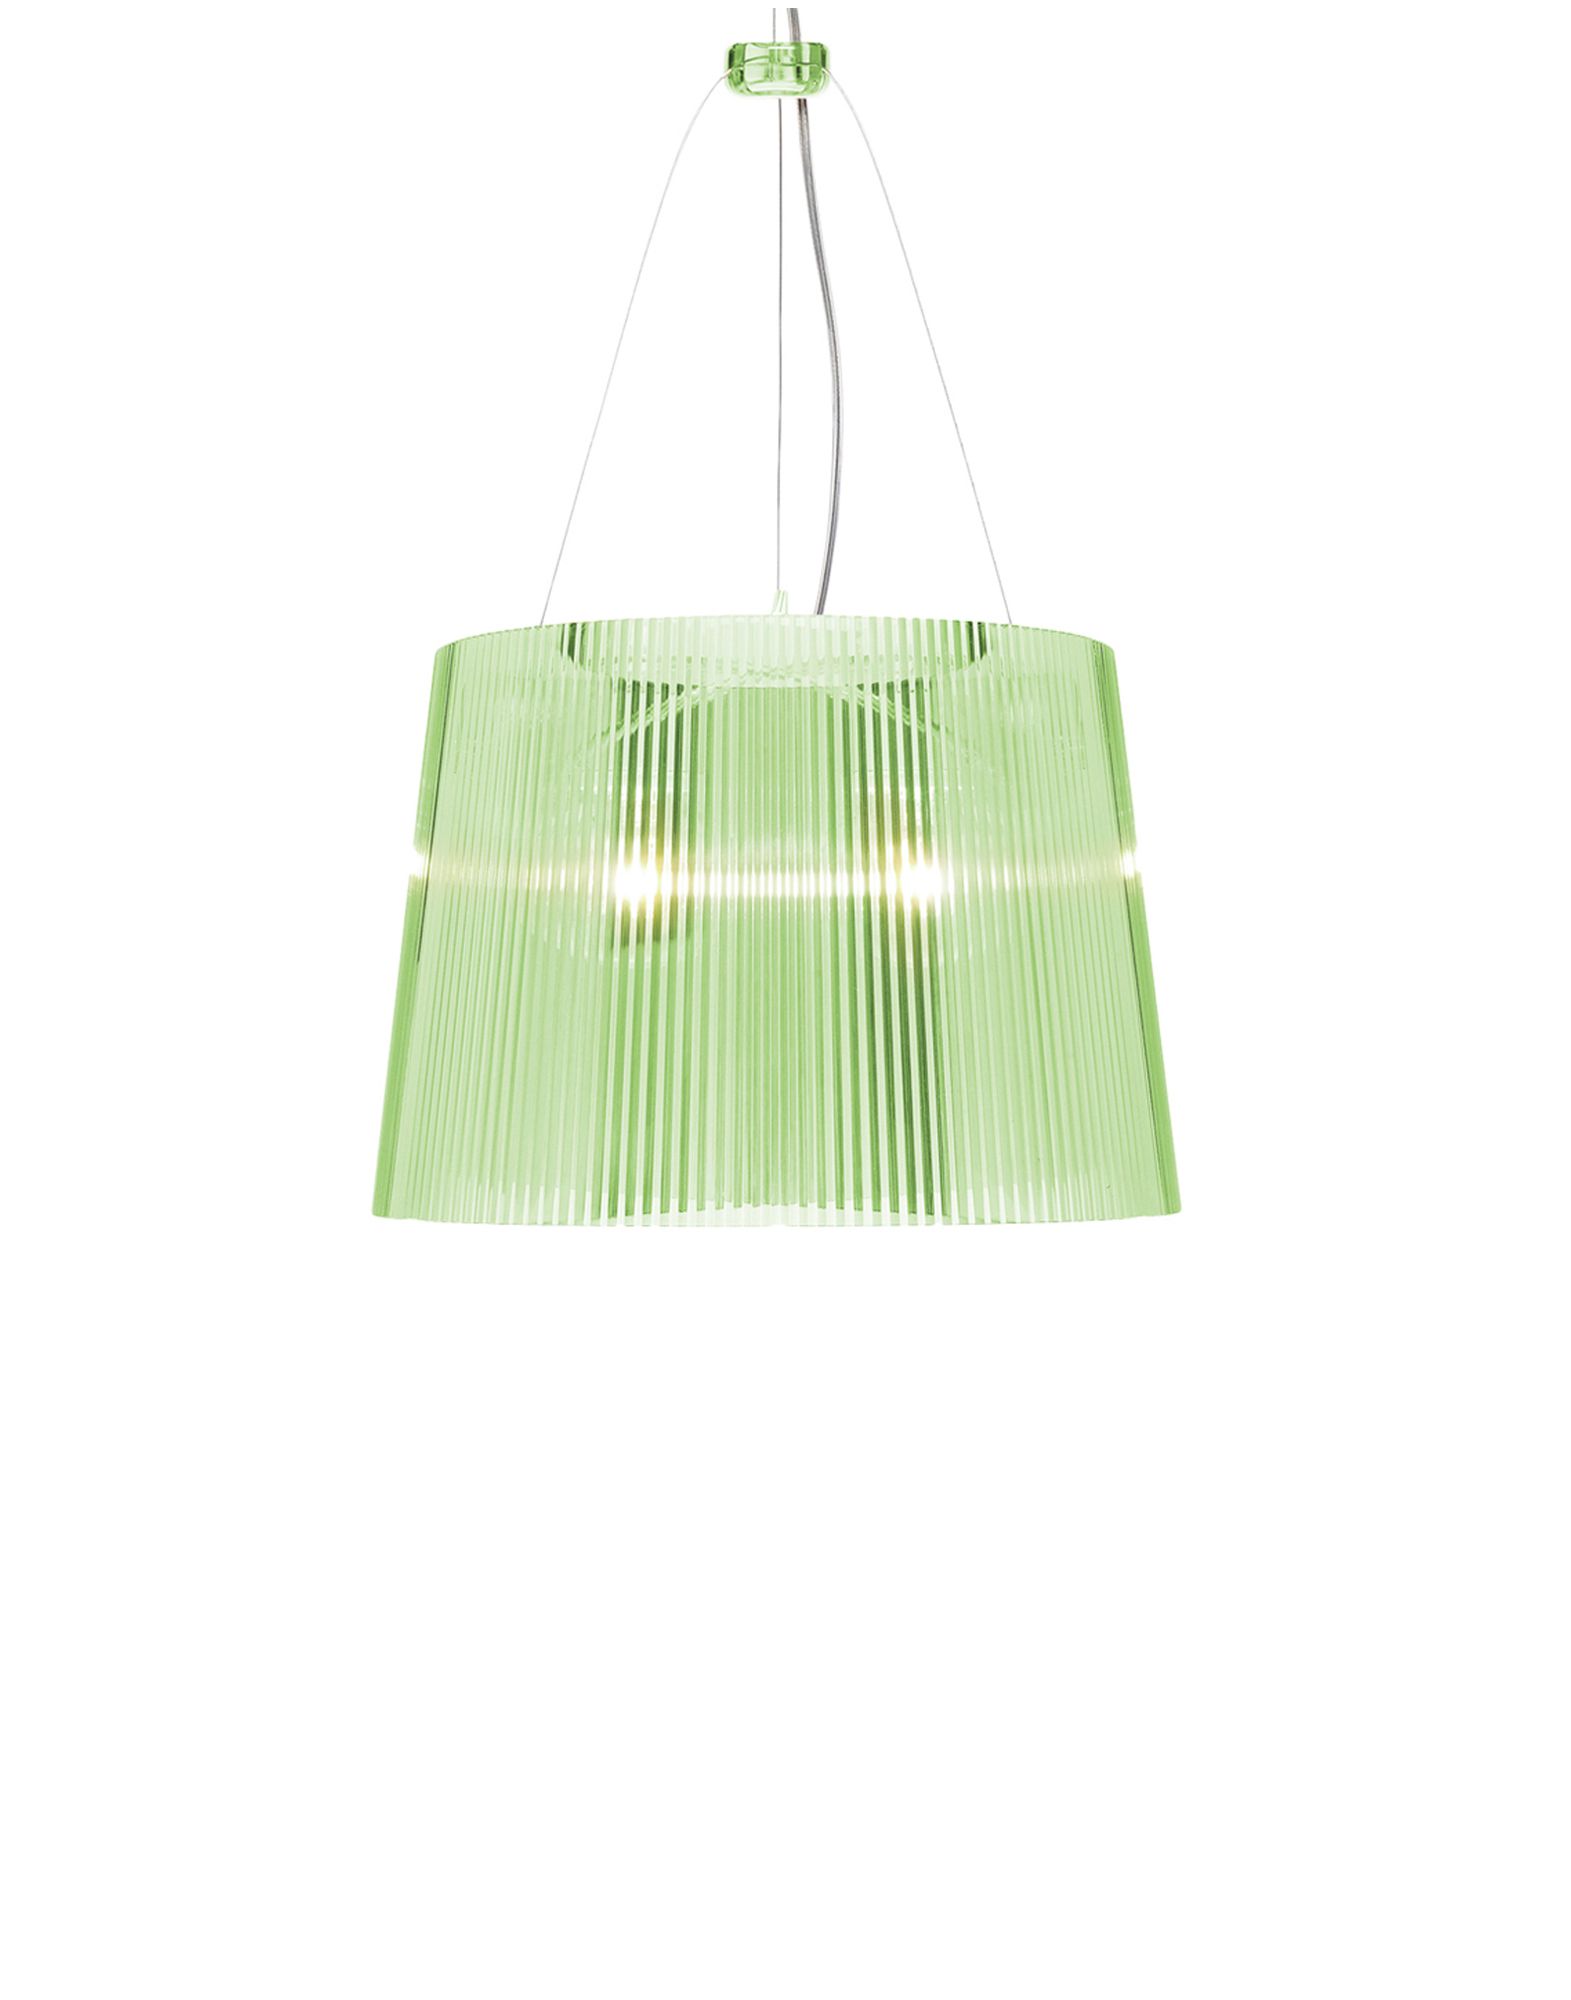 Suspensie Kartell Ge’ design Ferruccio Laviani E27 max 70W h37cm verde transparent